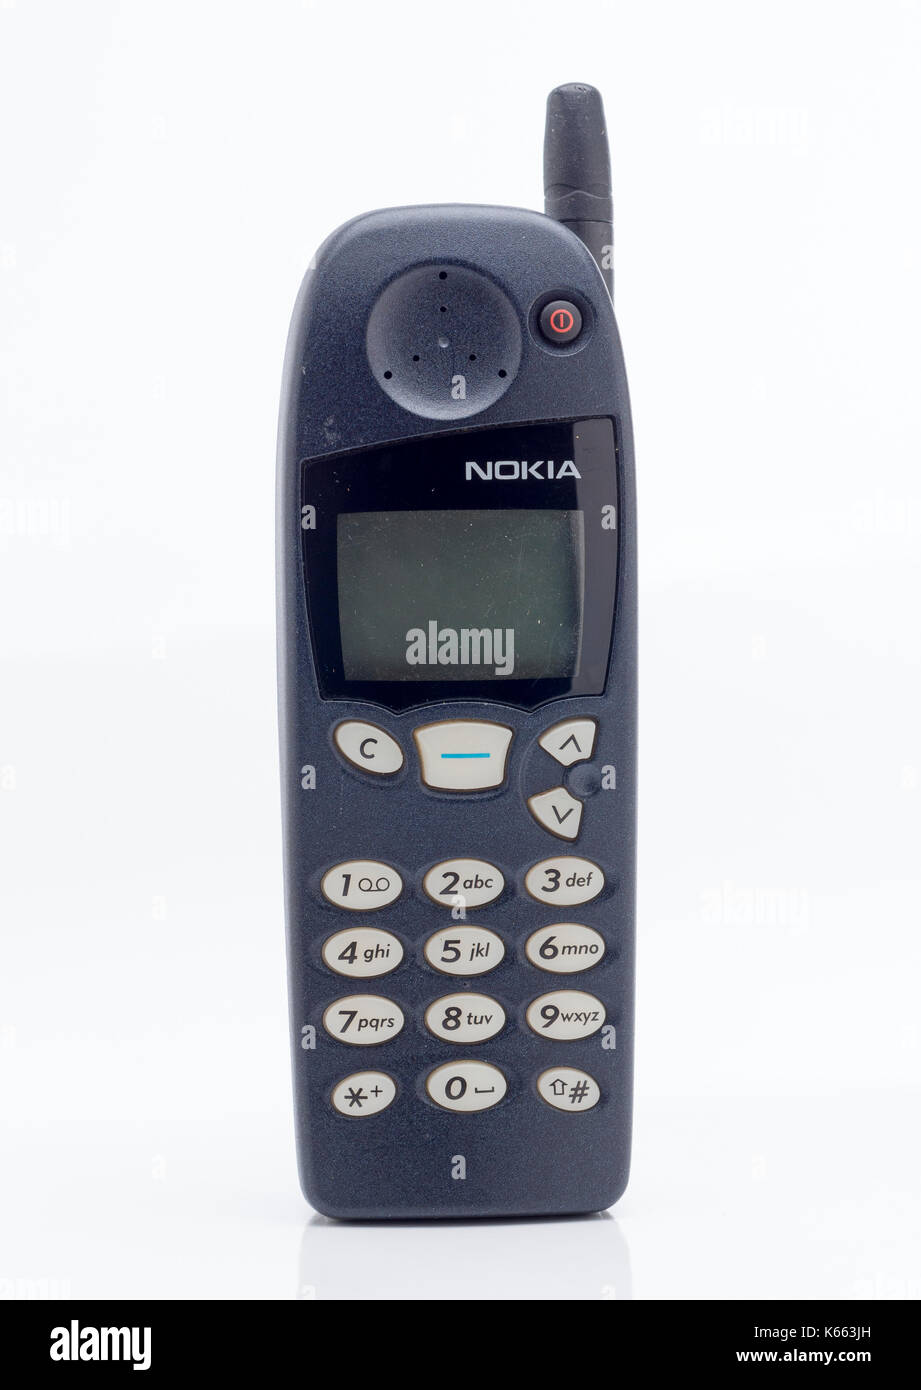 Nokia 5110 Mobile Cell Phone, introduit pour la première fois en 1998. C'était le 4ème Nokia modèle. Banque D'Images